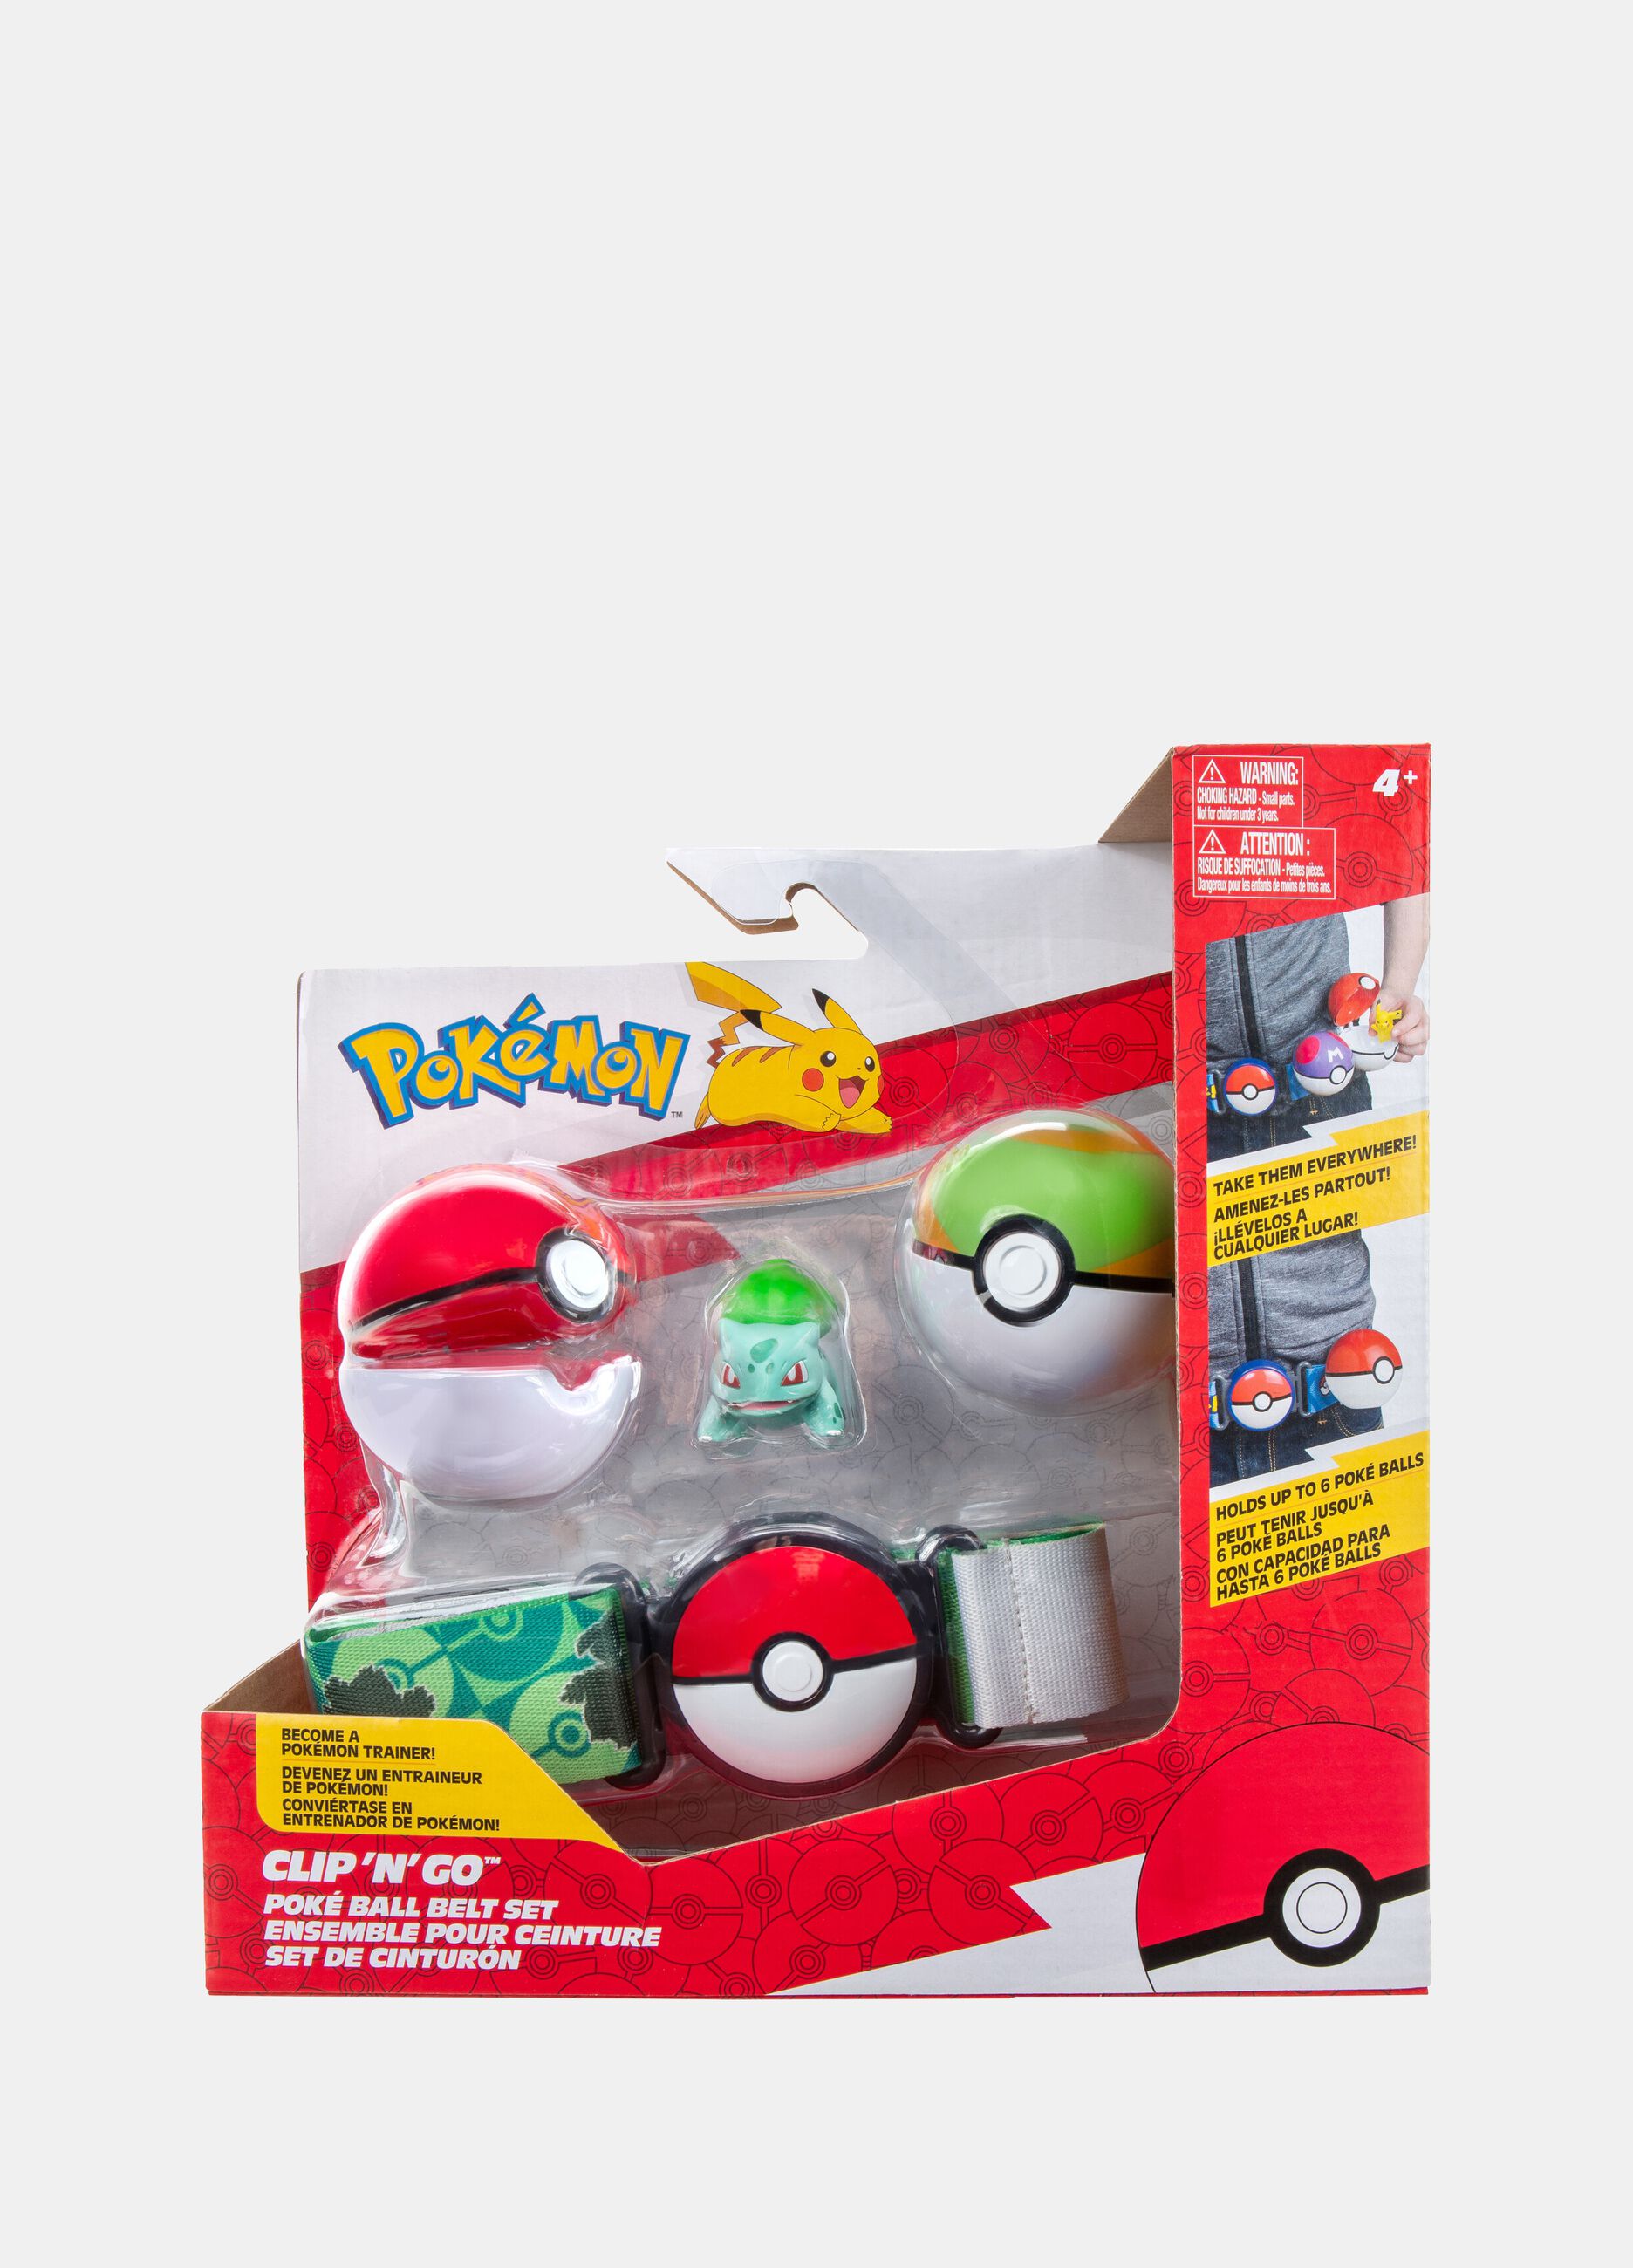 Pokémon Sneasel Clip 'n' Go Poké Ball belt set